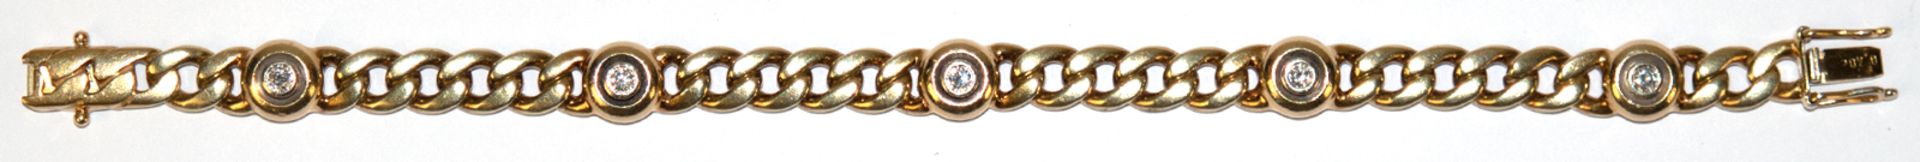 Brillant-Armband, 585er GG/WG, ausgefasst mit 5 Brillanten von zus. 0,40 ct. (punziert), VVS-VS, Ka